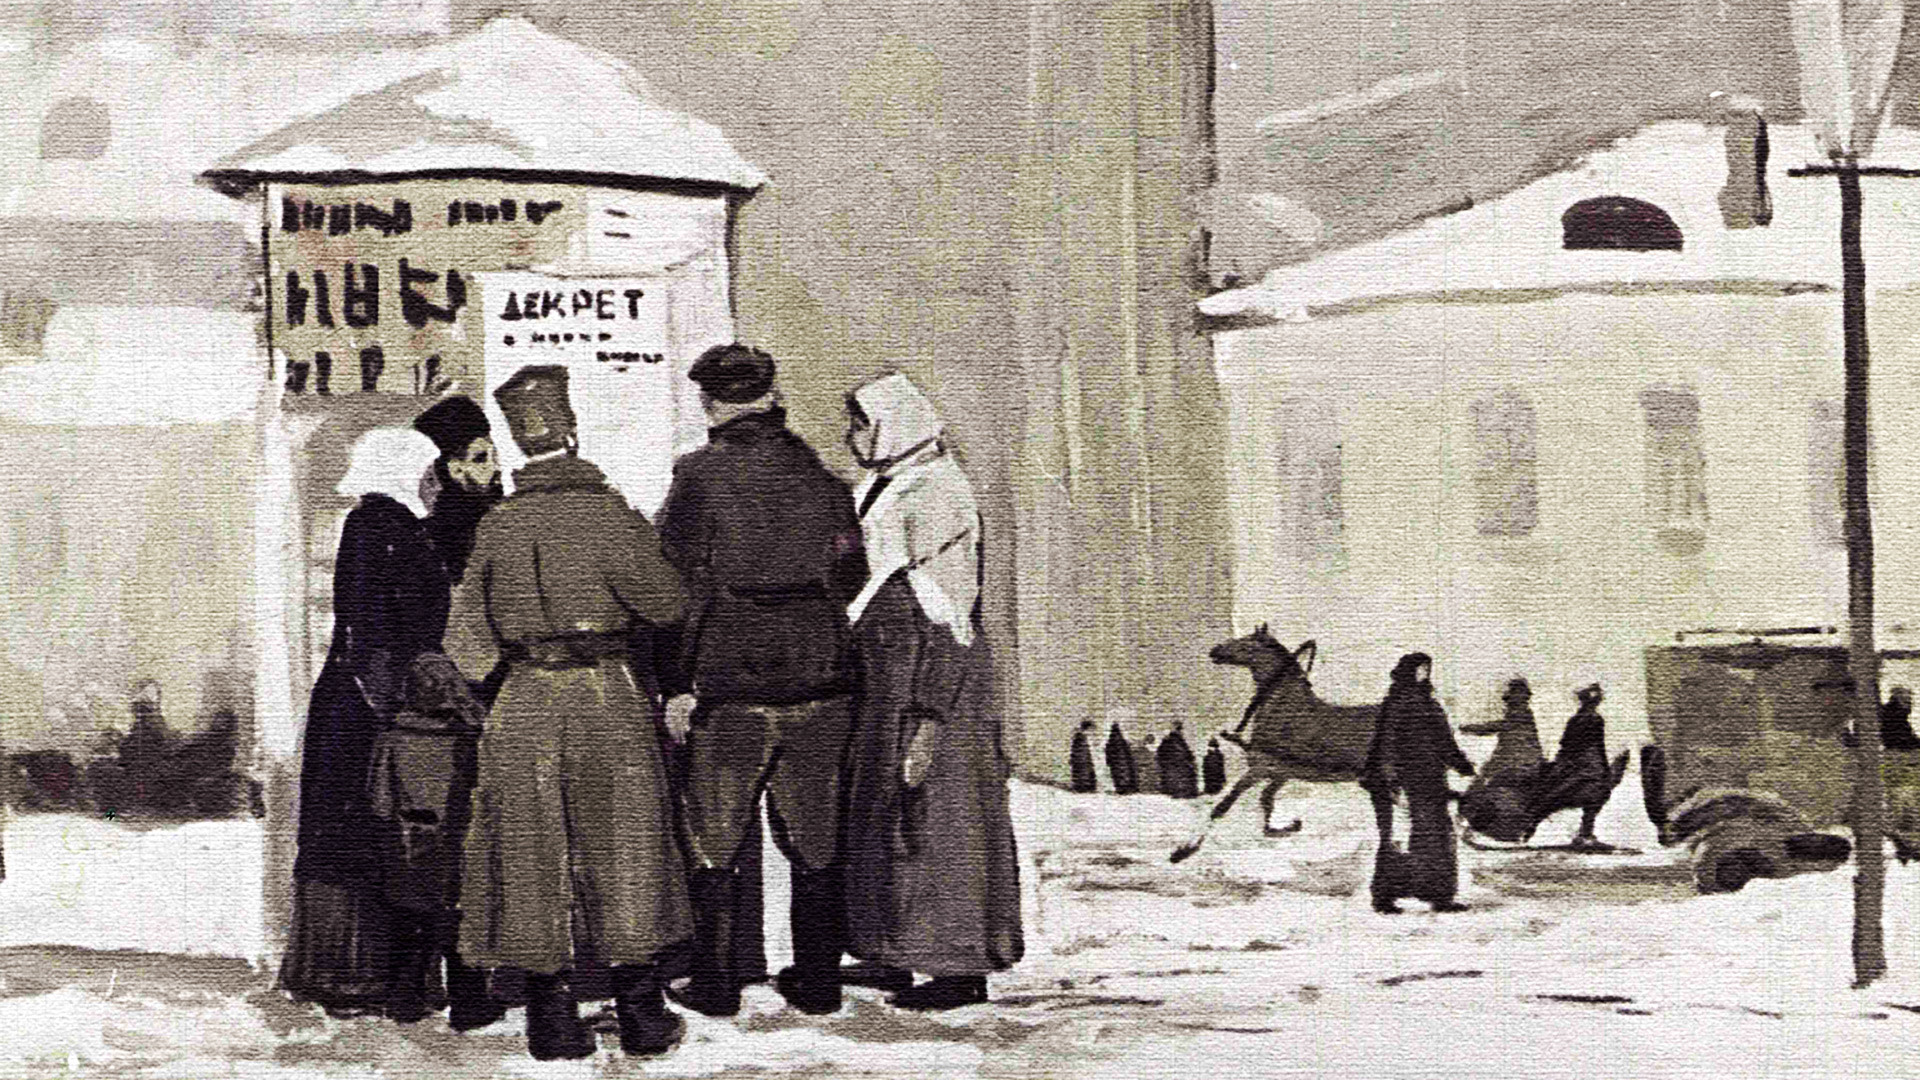 Sebuah lukisan yang menunjukkan orang-orang berkumpul untuk membaca salah satu keputusan yang dikeluarkan kaum Bolshevik.